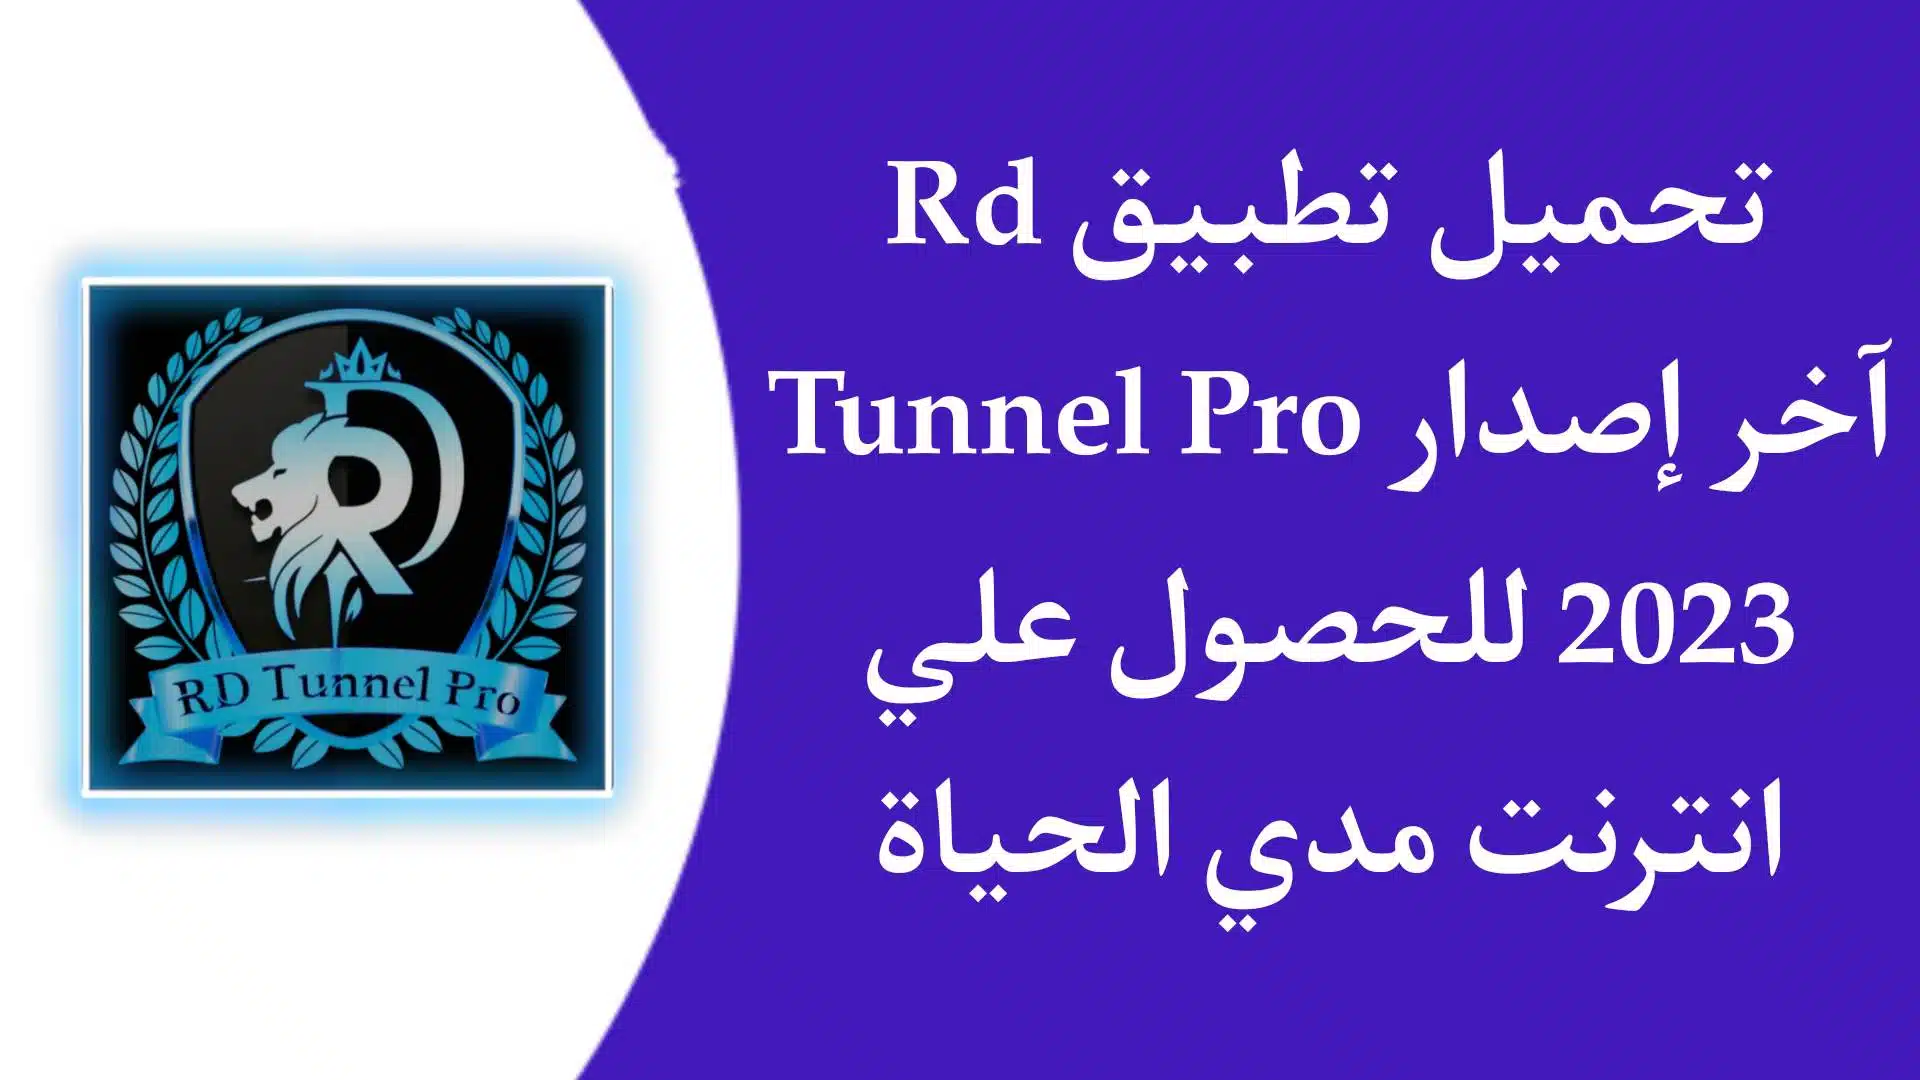 تحميل تطبيق rd tunnel pro مهكر 2023 اخر اصدار لتشغيل الانترنت مجانا